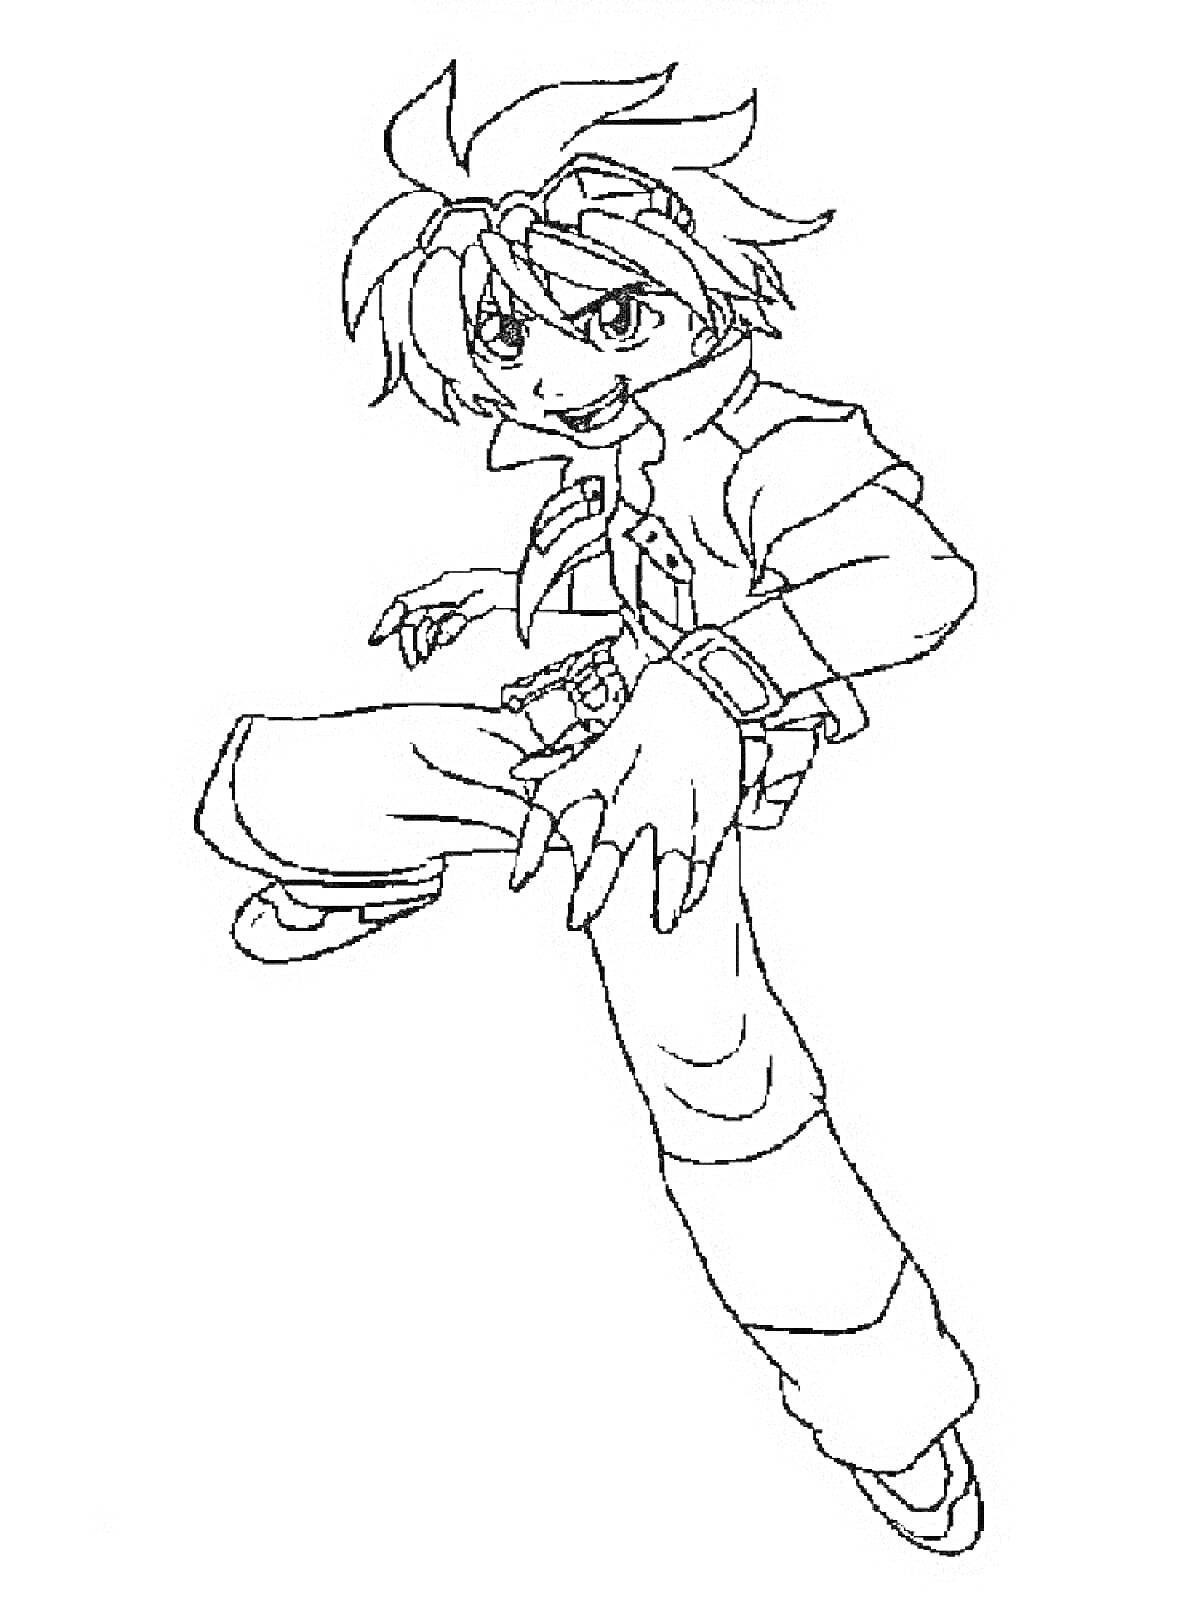 Раскраска Чертеж персонажа Бакугана в боевой позе с поднятой ногой и вытянутыми руками